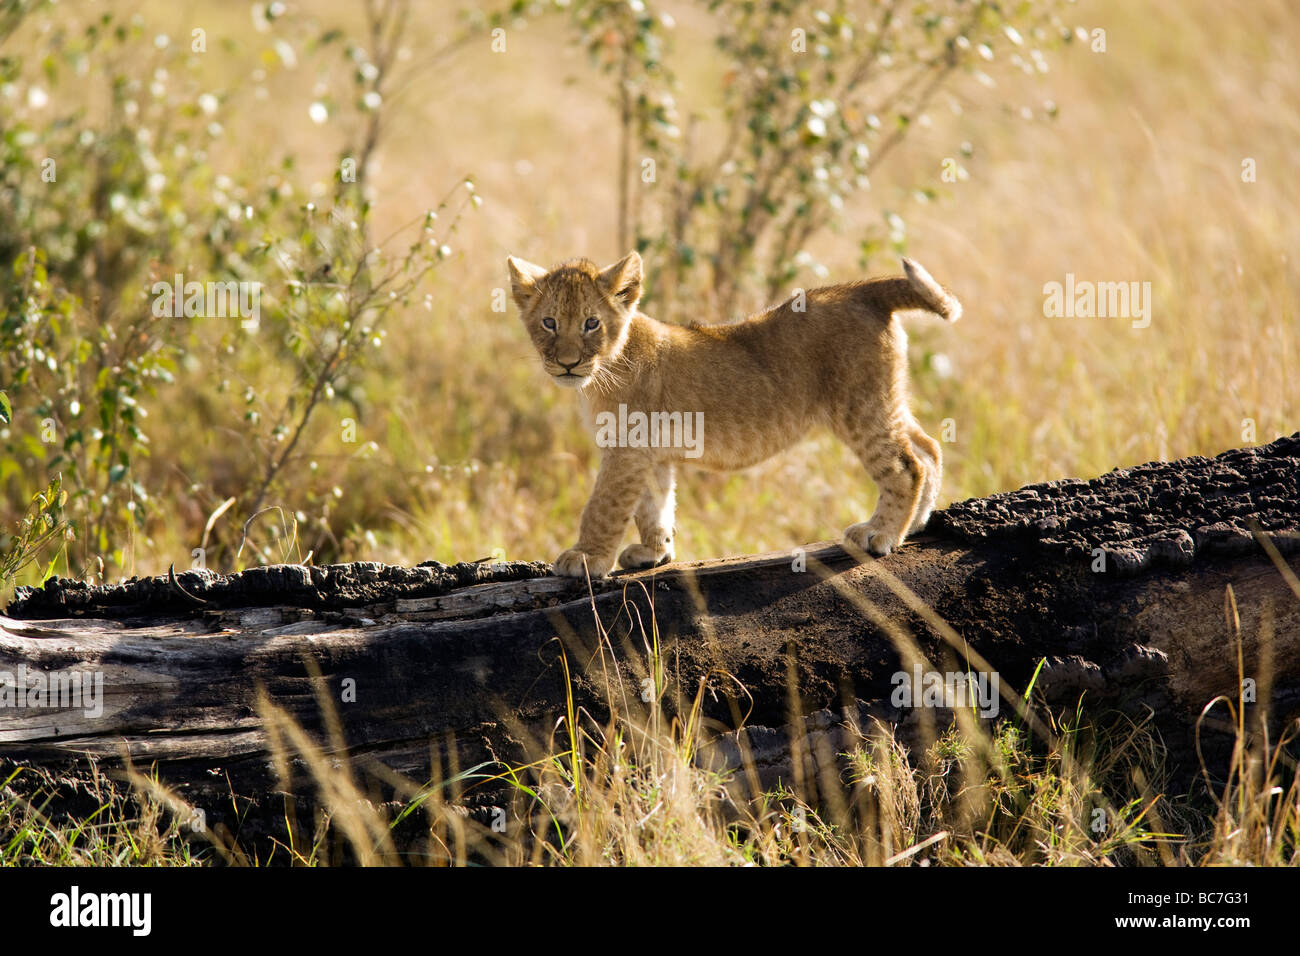 Lion cub - Masai Mara National Reserve, Kenya Banque D'Images